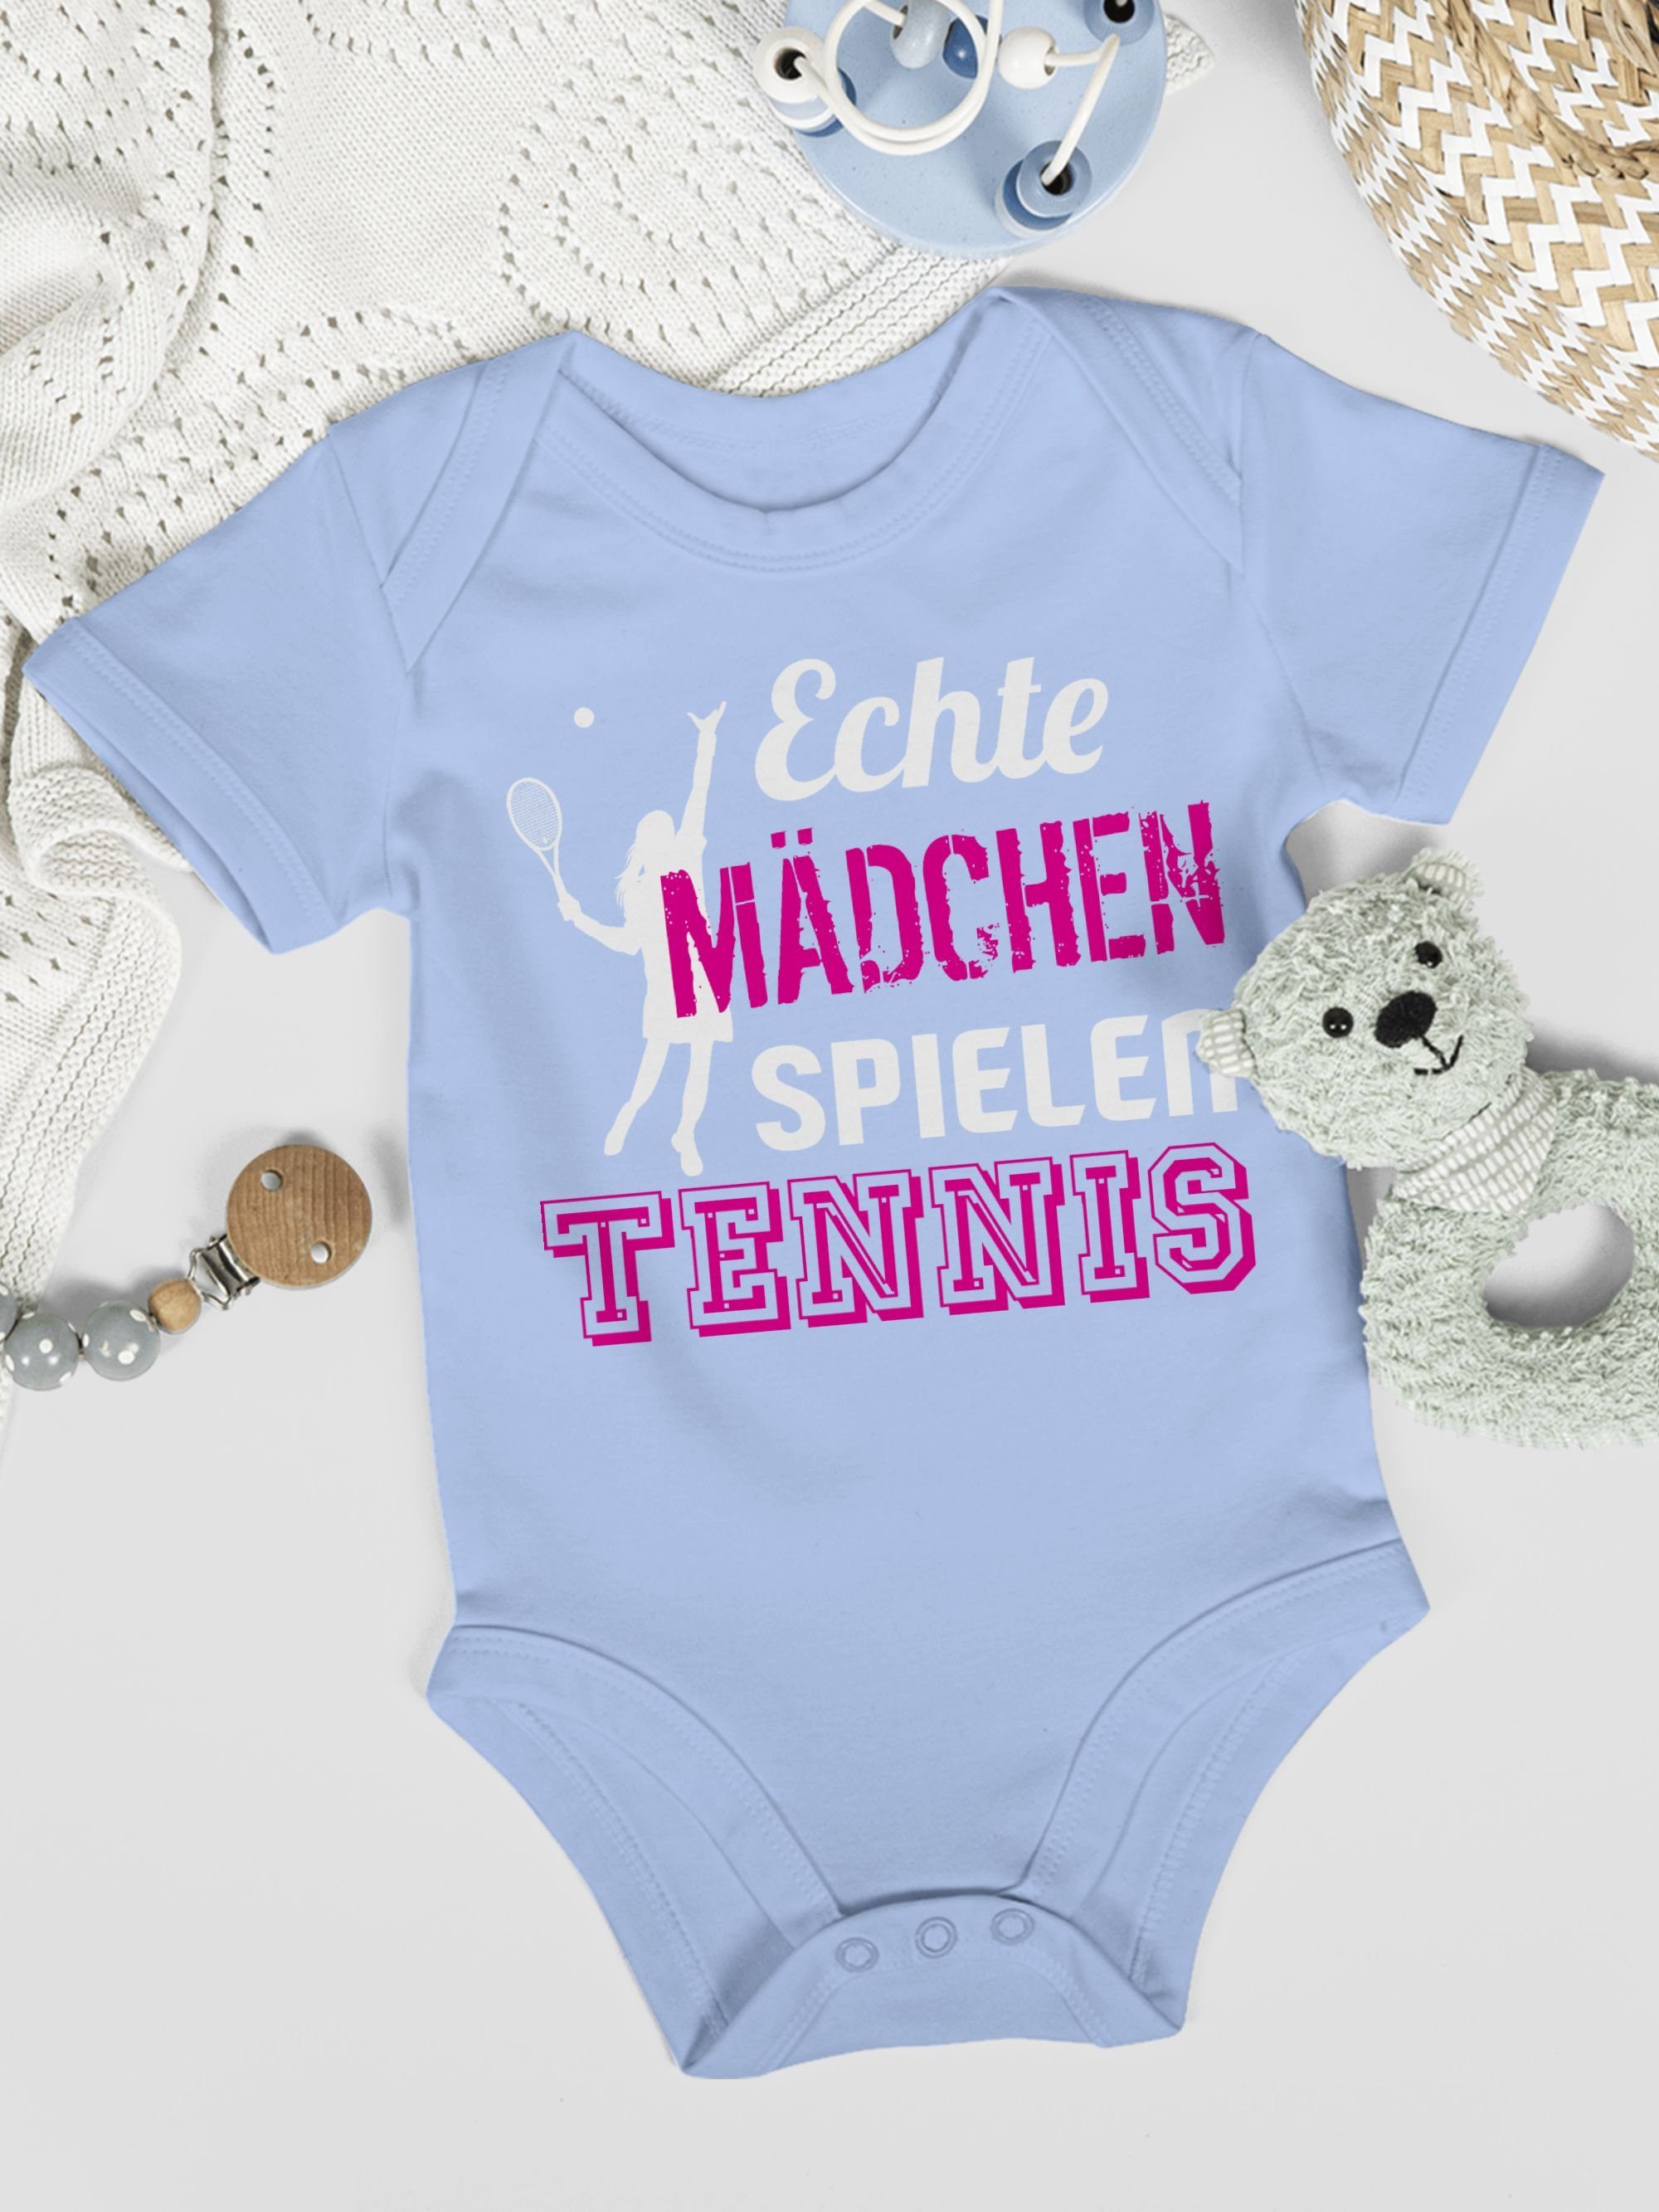 Mädchen Babyblau 1 Baby spielen Bewegung Sport & Tennis Shirtracer Echte Shirtbody